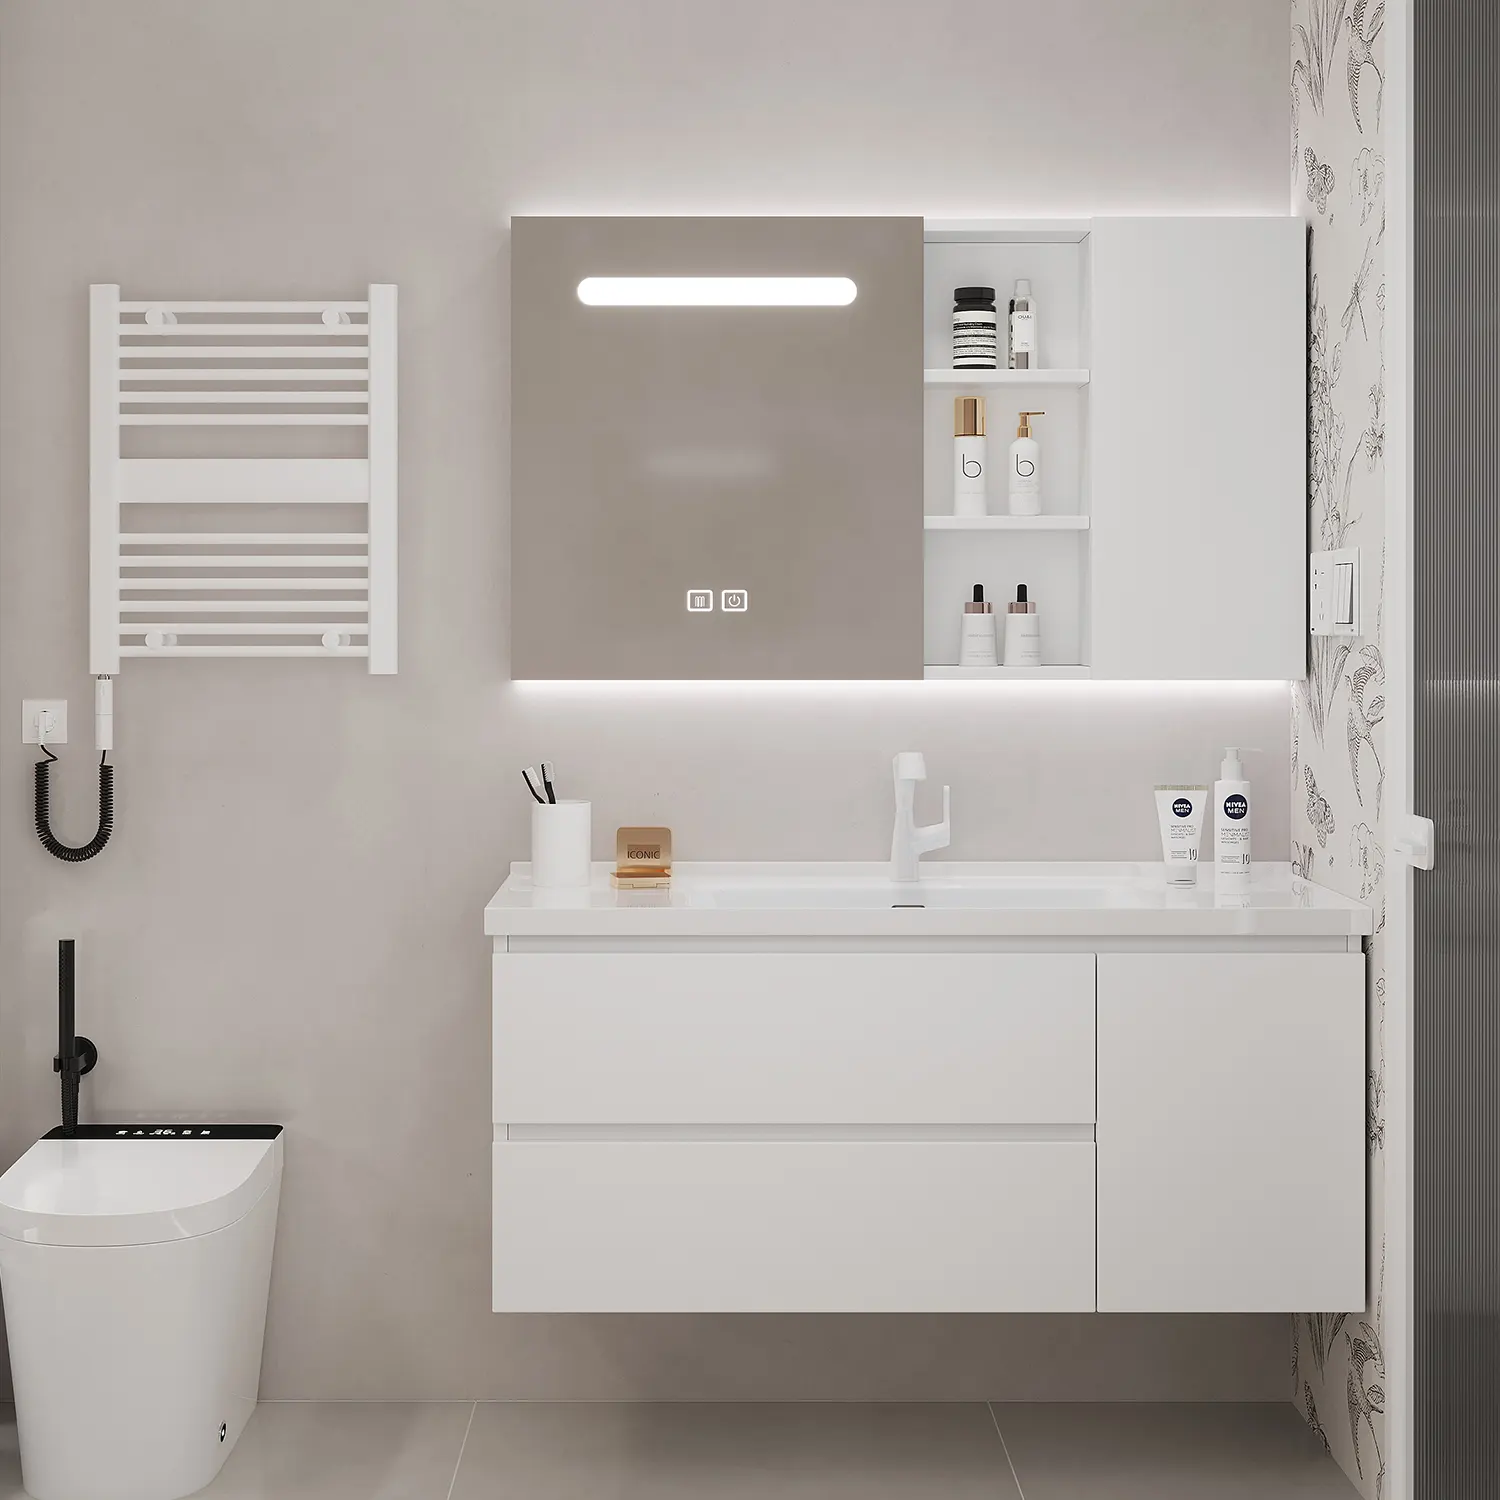 Европейский стиль ванной комнаты современные туалетные столики для ванных комнат Шкафы для ванной комнаты диагональные шины от производителя на продажу, высокое качество, для Водонепроницаемая камера наблюдения, белый корпус для ванной комнаты